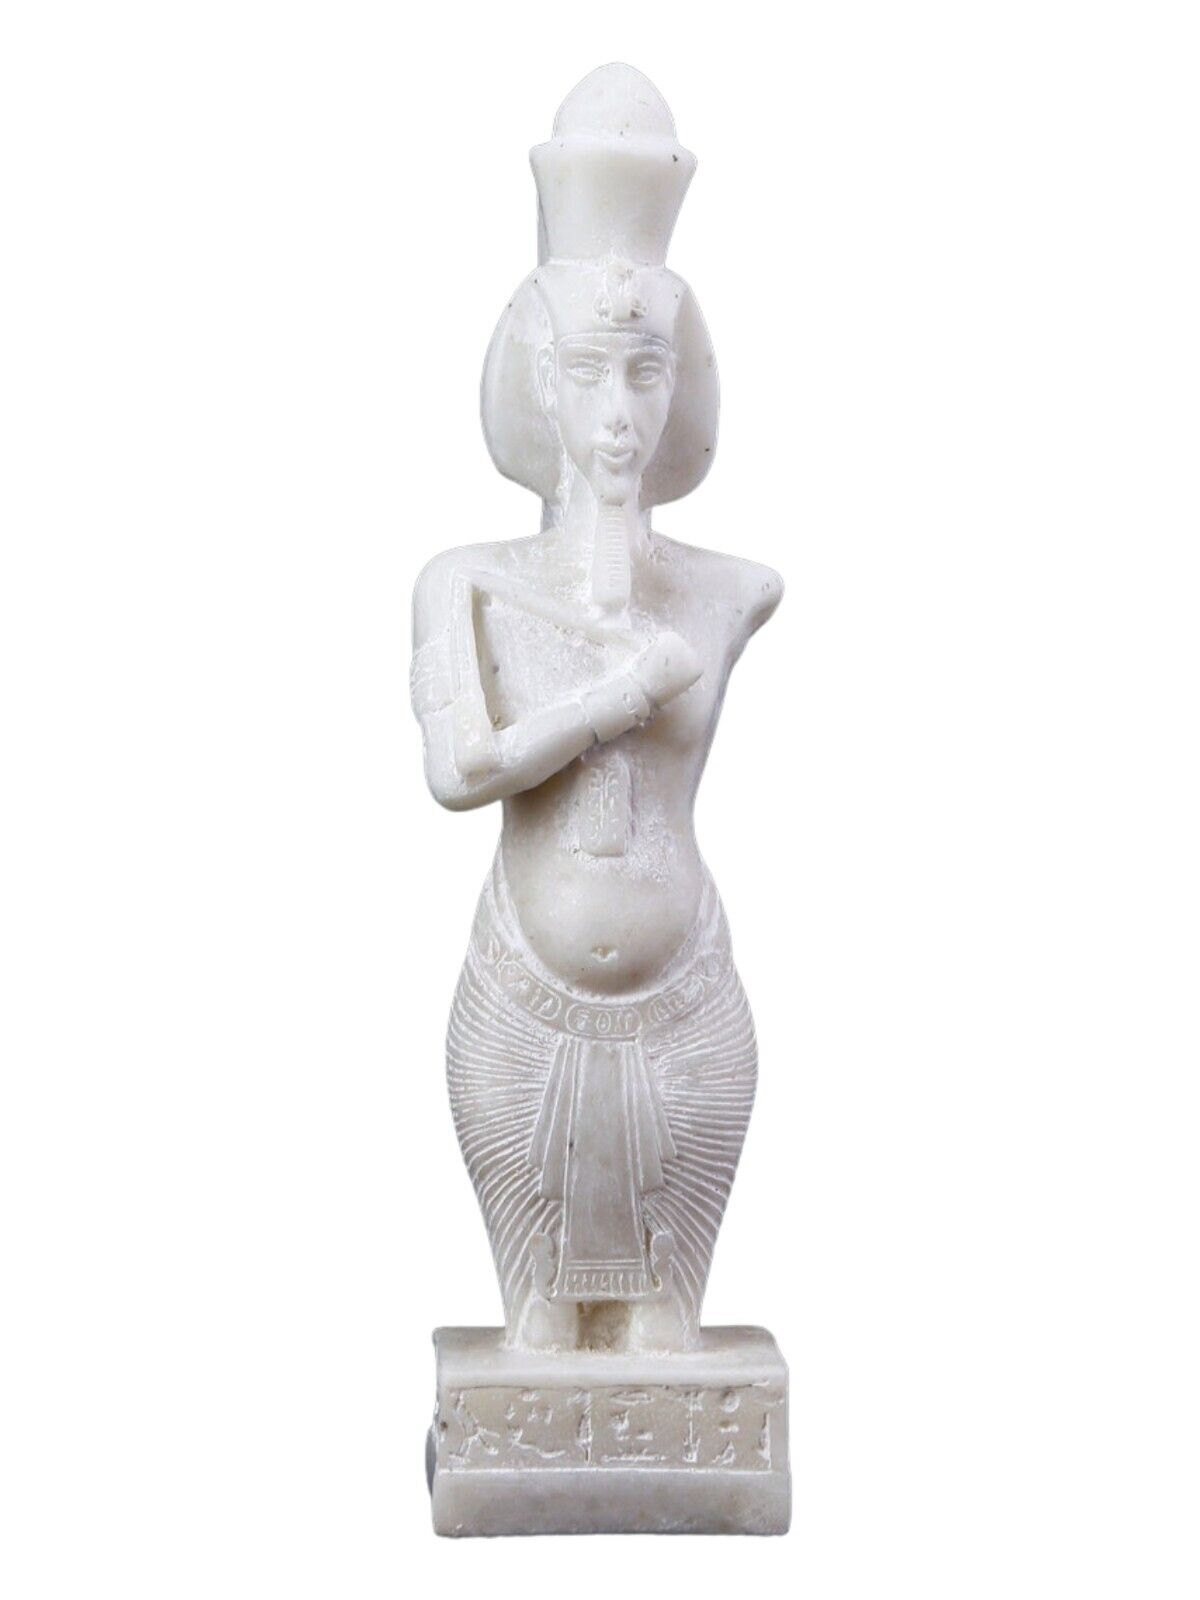 UNIQUE ANCIENT EGYPTIAN ANTIQUE Statue King Akhenaten Magic Hieroglyphic